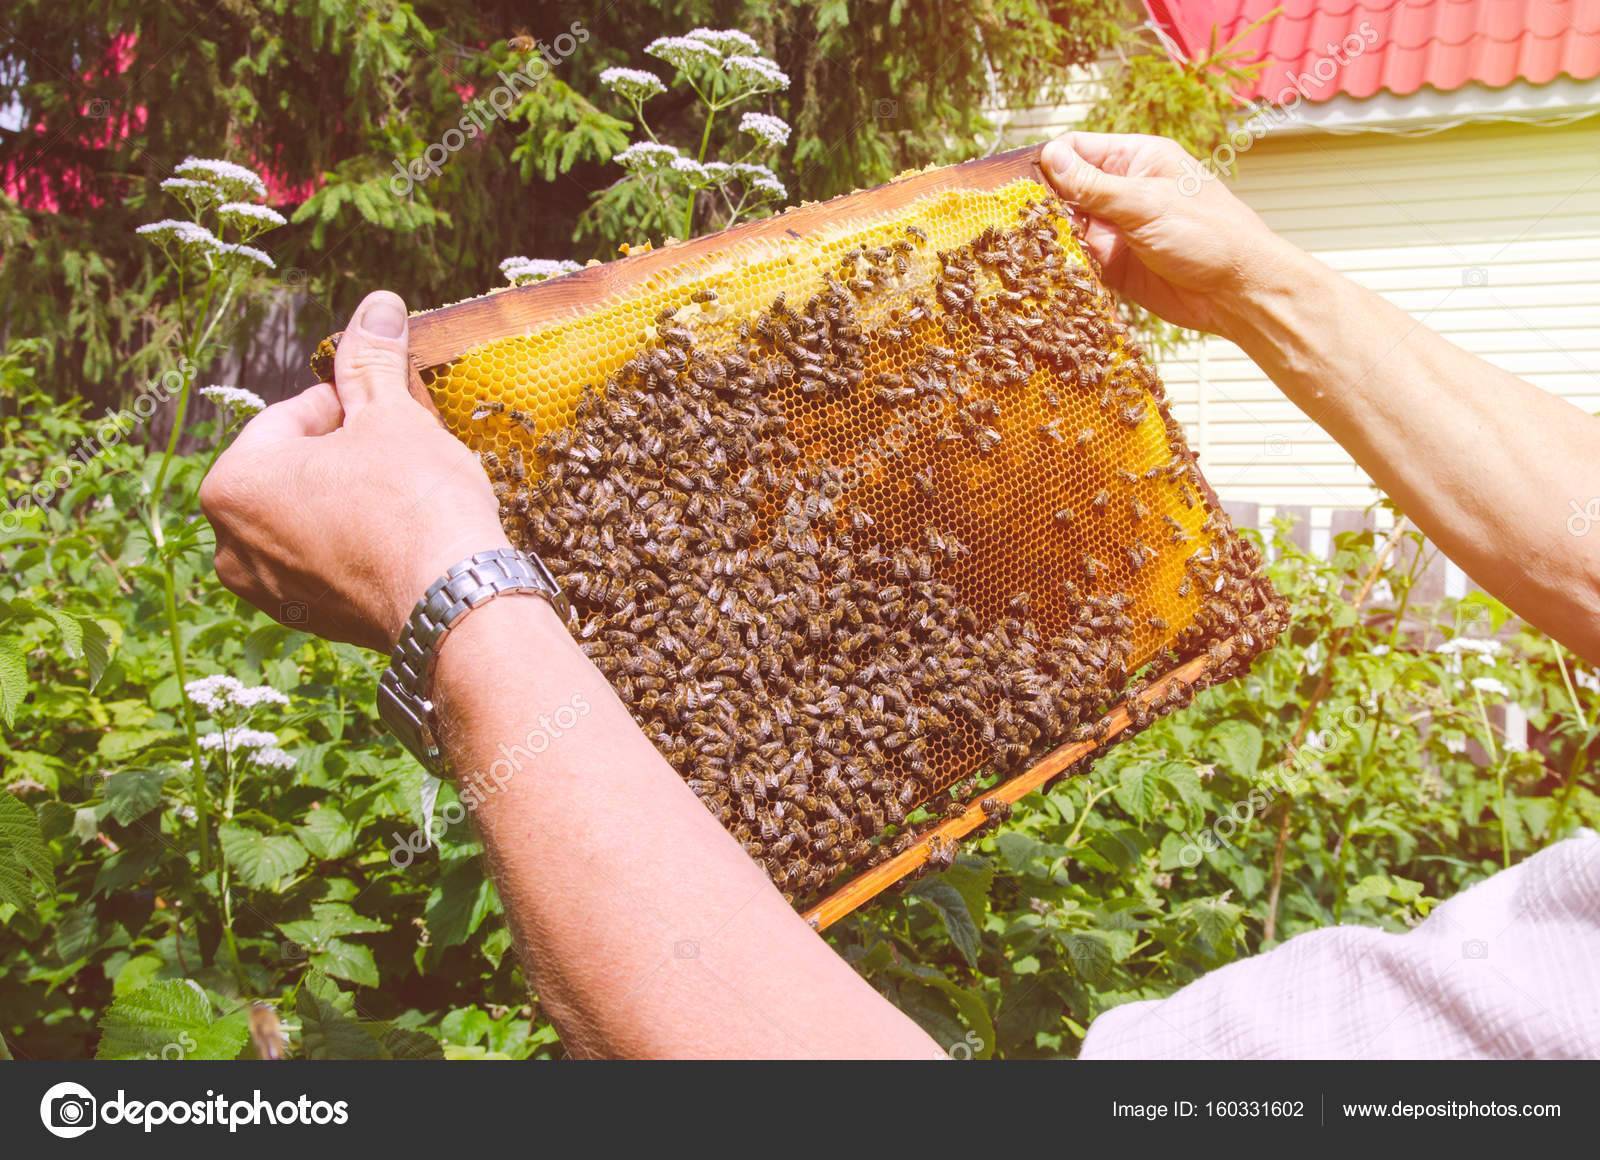 Значение суши для пчел - пчеловодство | описание, советы, отзывы, фото и видео